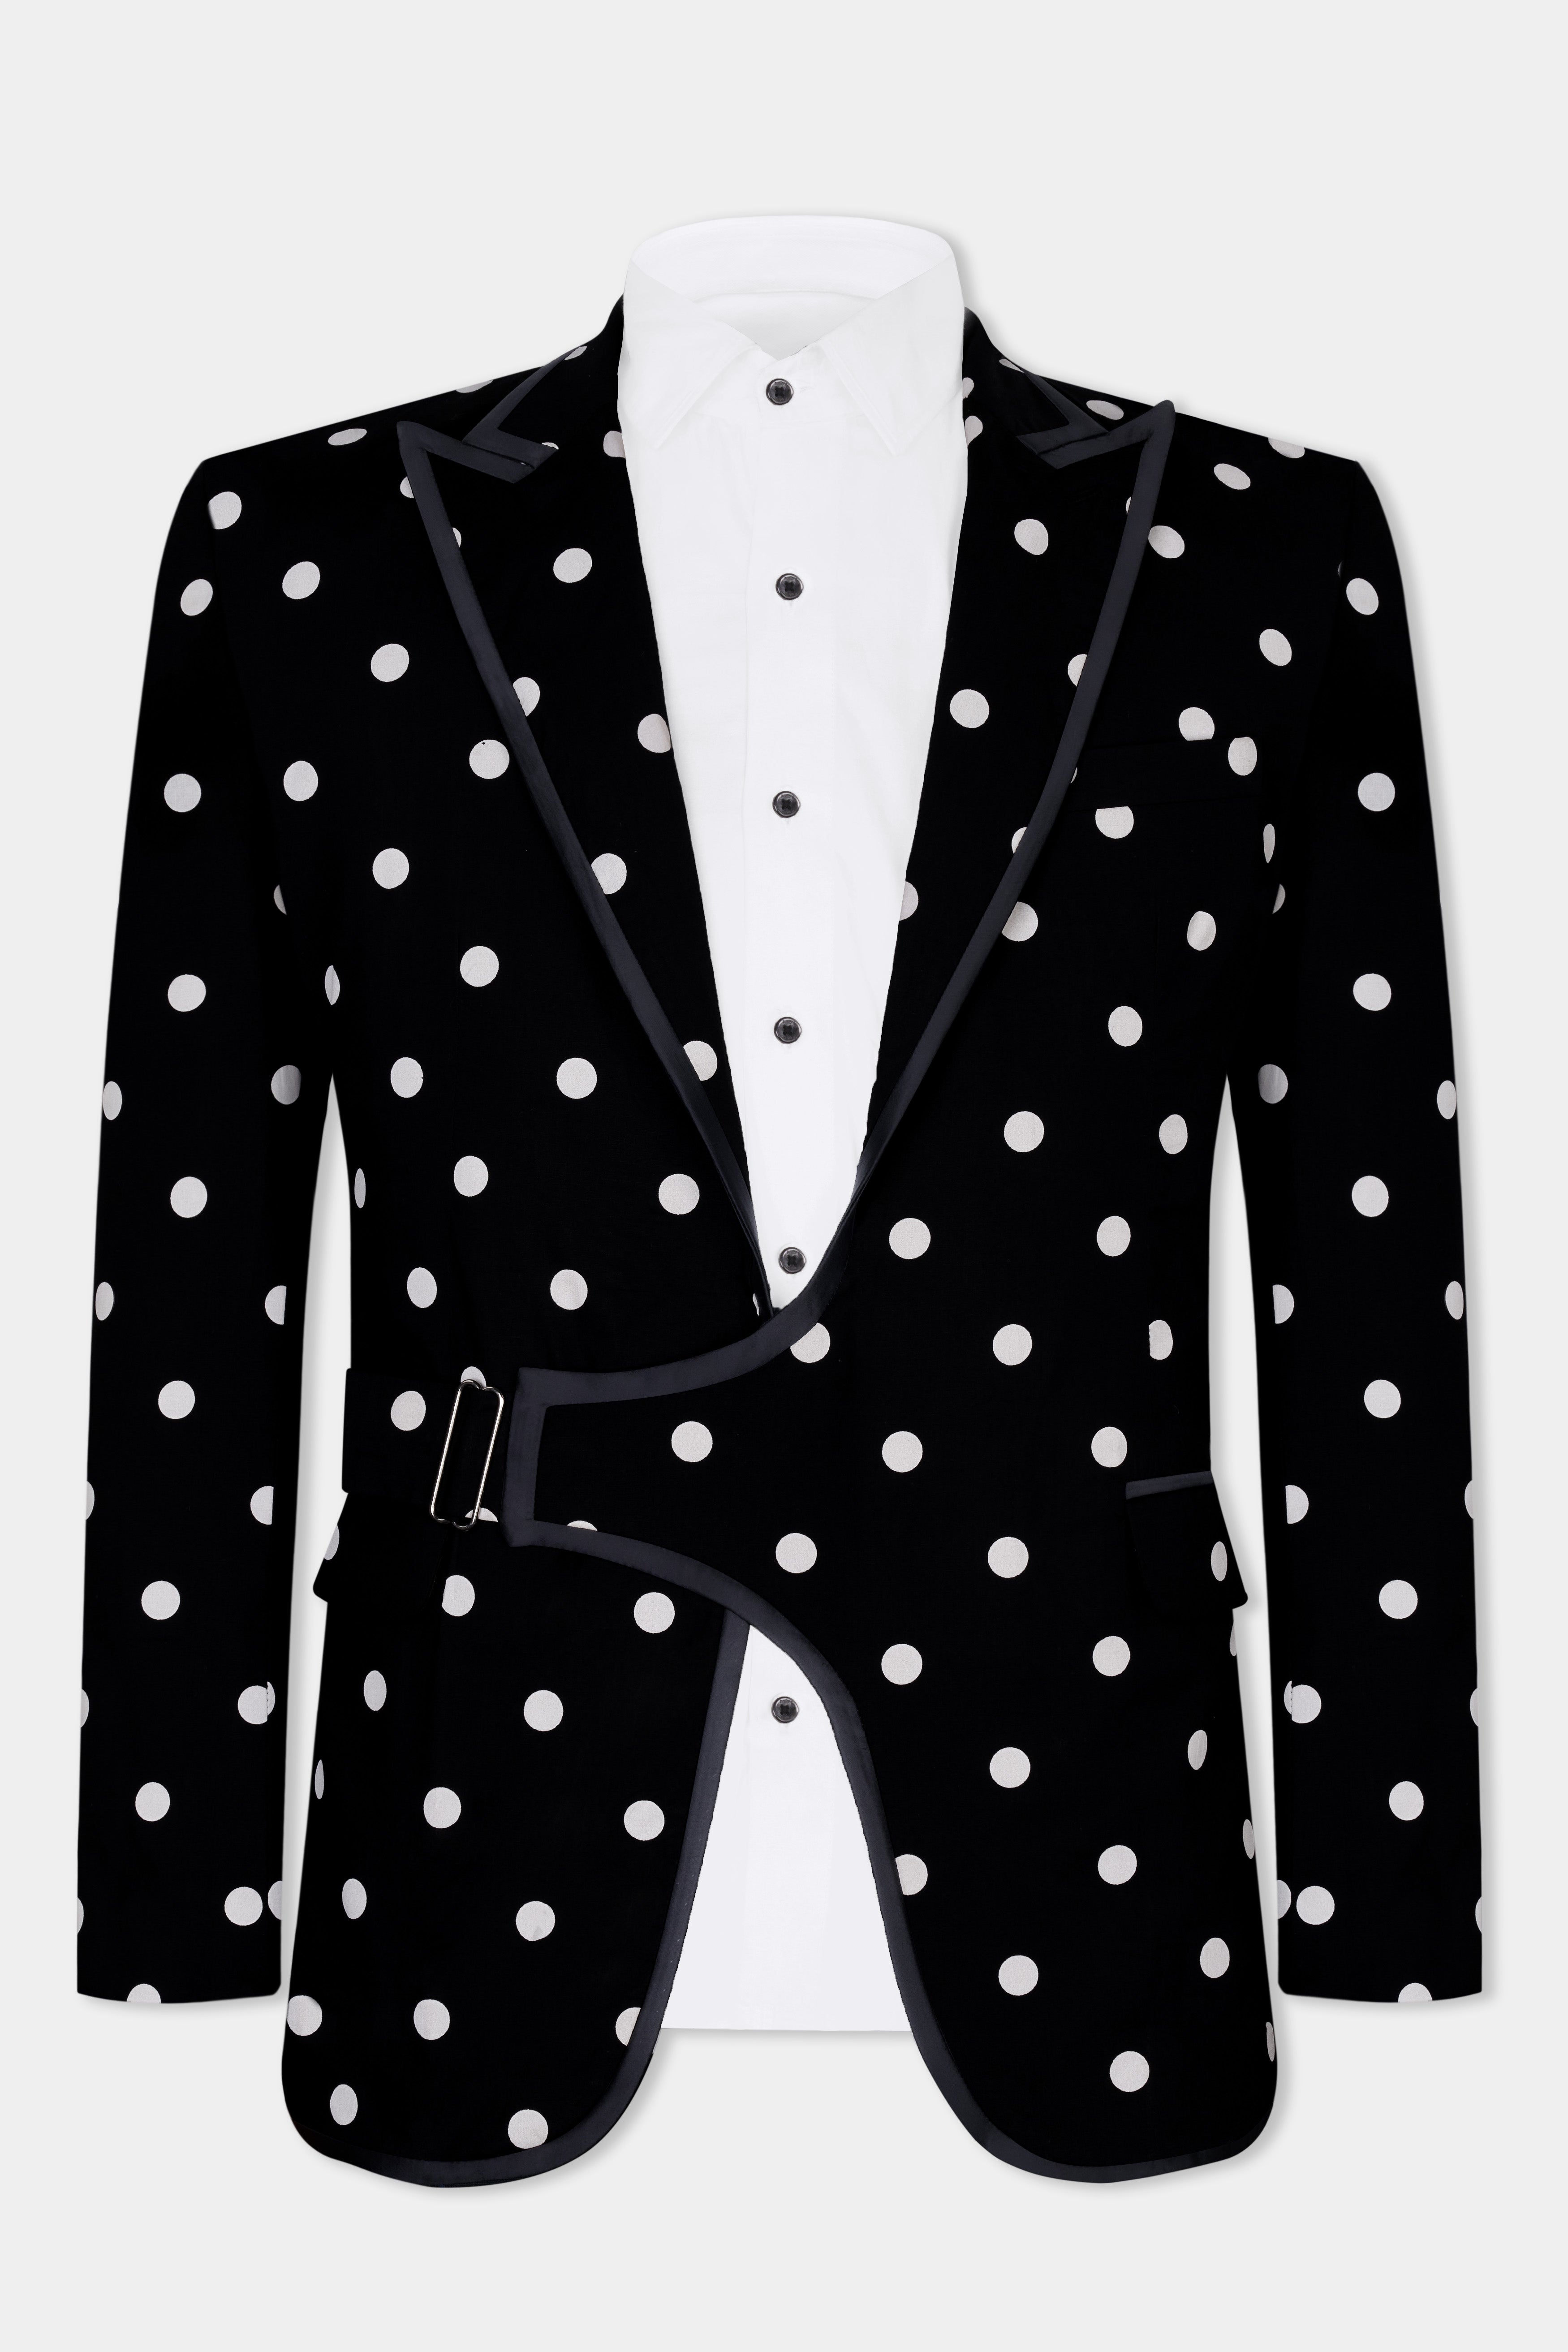 Jade Black with White Polka Dotted Premium Cotton Designer Suit ST2845-SBP-D442-36,ST2845-SBP-D442-38,ST2845-SBP-D442-40,ST2845-SBP-D442-42,ST2845-SBP-D442-44,ST2845-SBP-D442-46,ST2845-SBP-D442-48,ST2845-SBP-D442-50,ST2845-SBP-D442-52,ST2845-SBP-D442-54,ST2845-SBP-D442-56,ST2845-SBP-D442-58,ST2845-SBP-D442-60